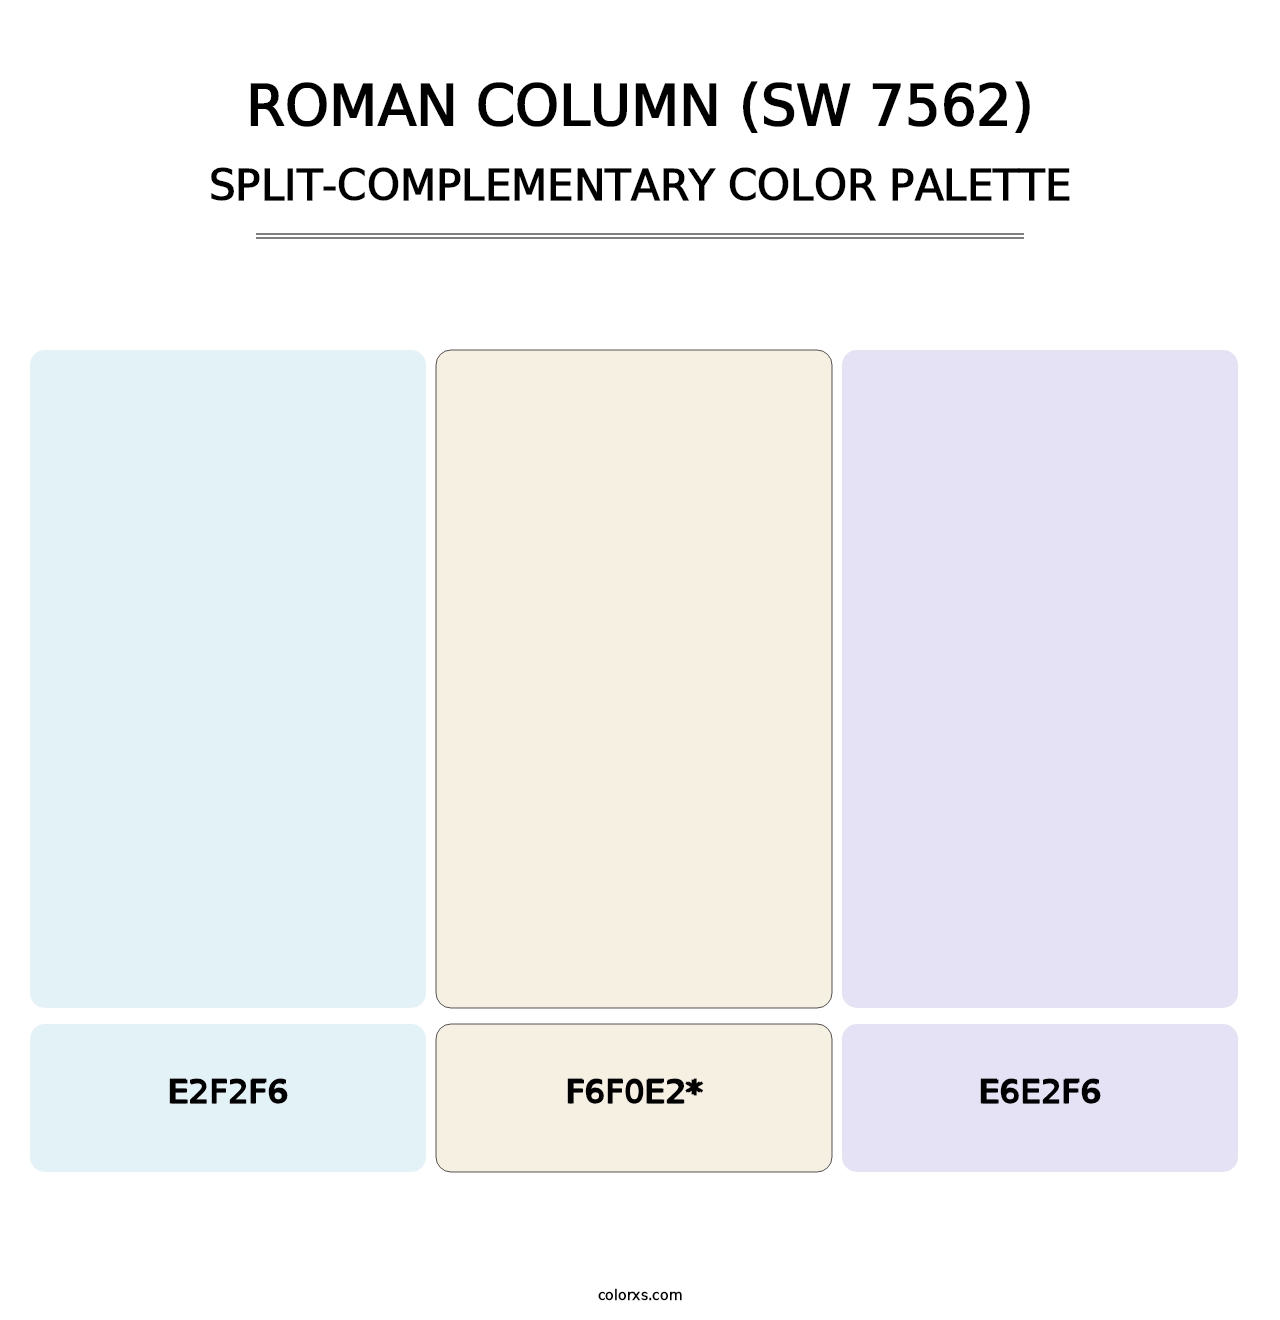 Roman Column (SW 7562) - Split-Complementary Color Palette